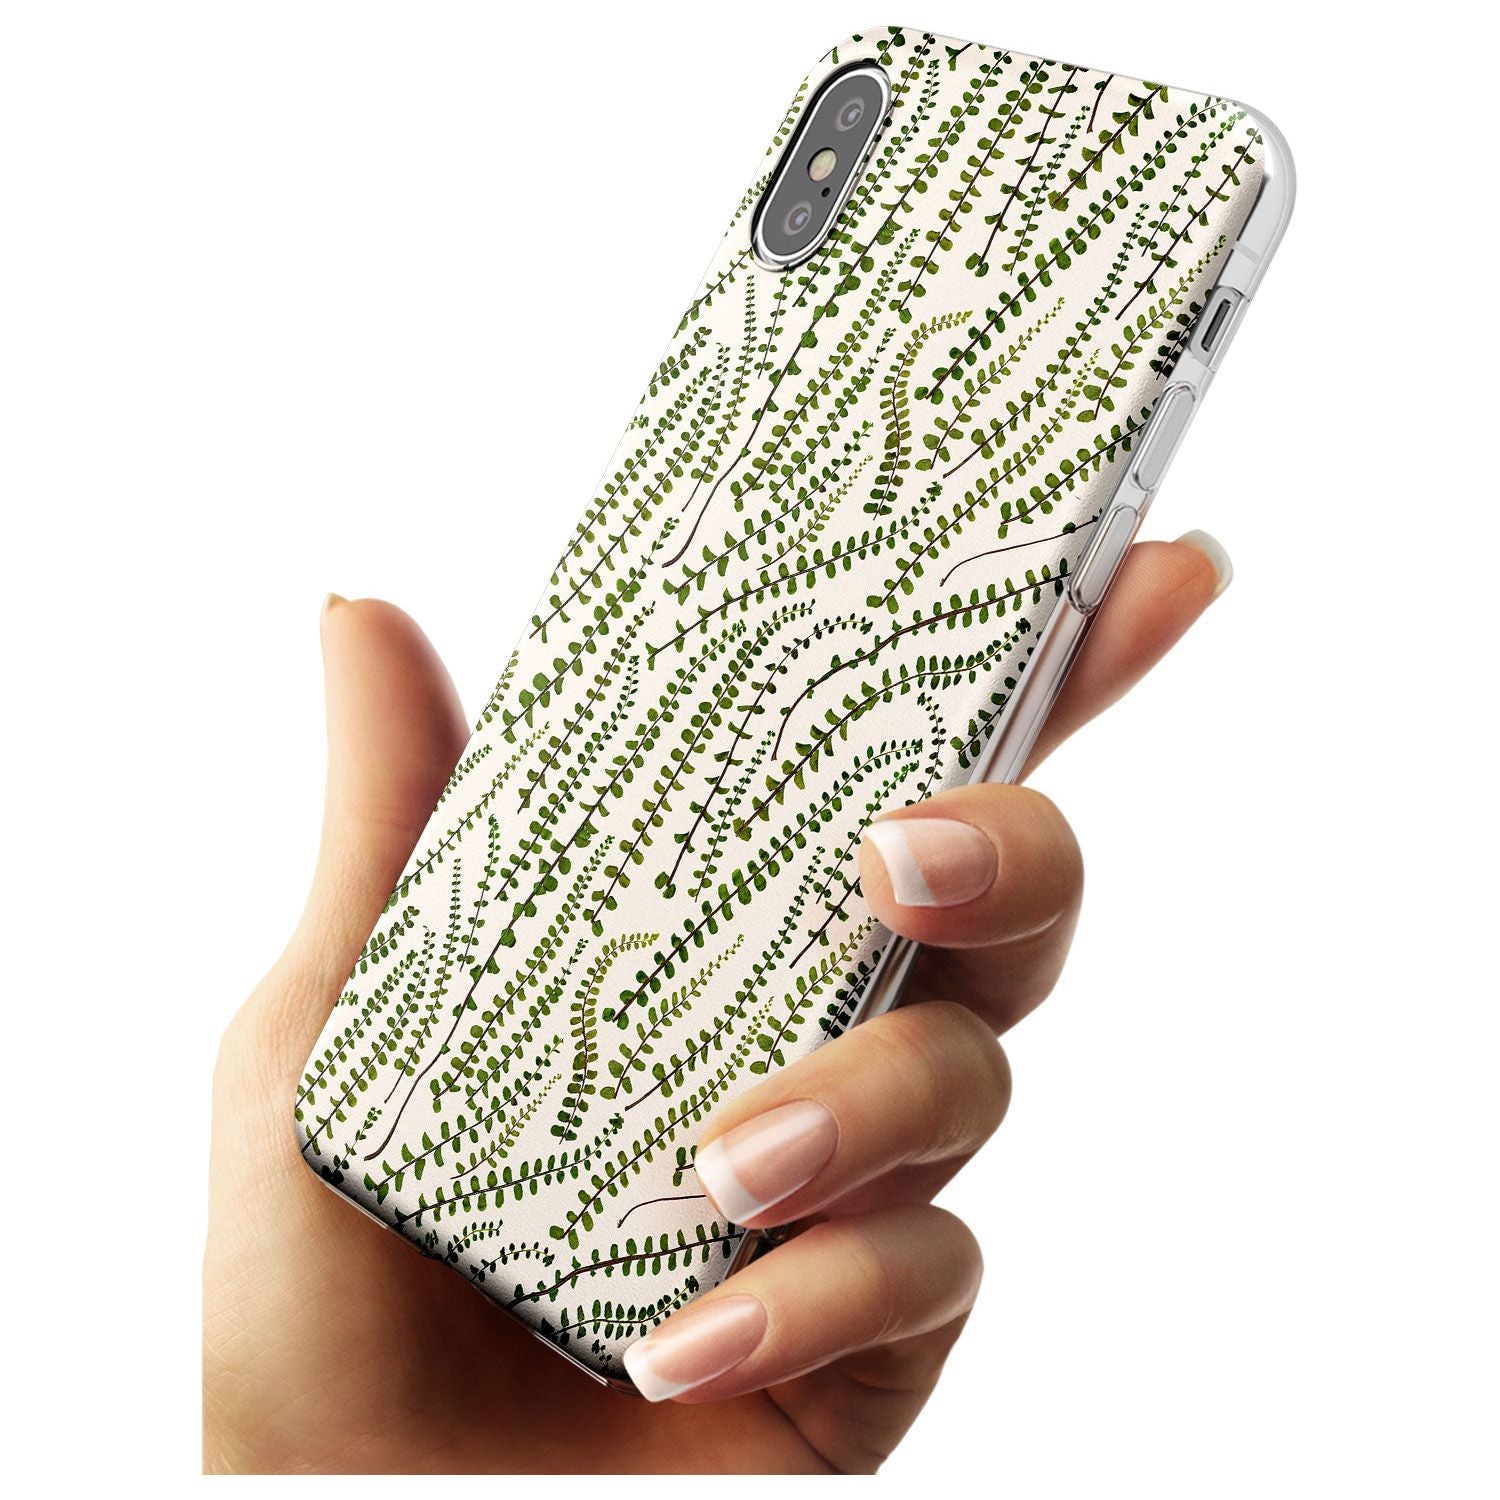 Fern Leaf Pattern Design - Cream Slim TPU Phone Case Warehouse X XS Max XR